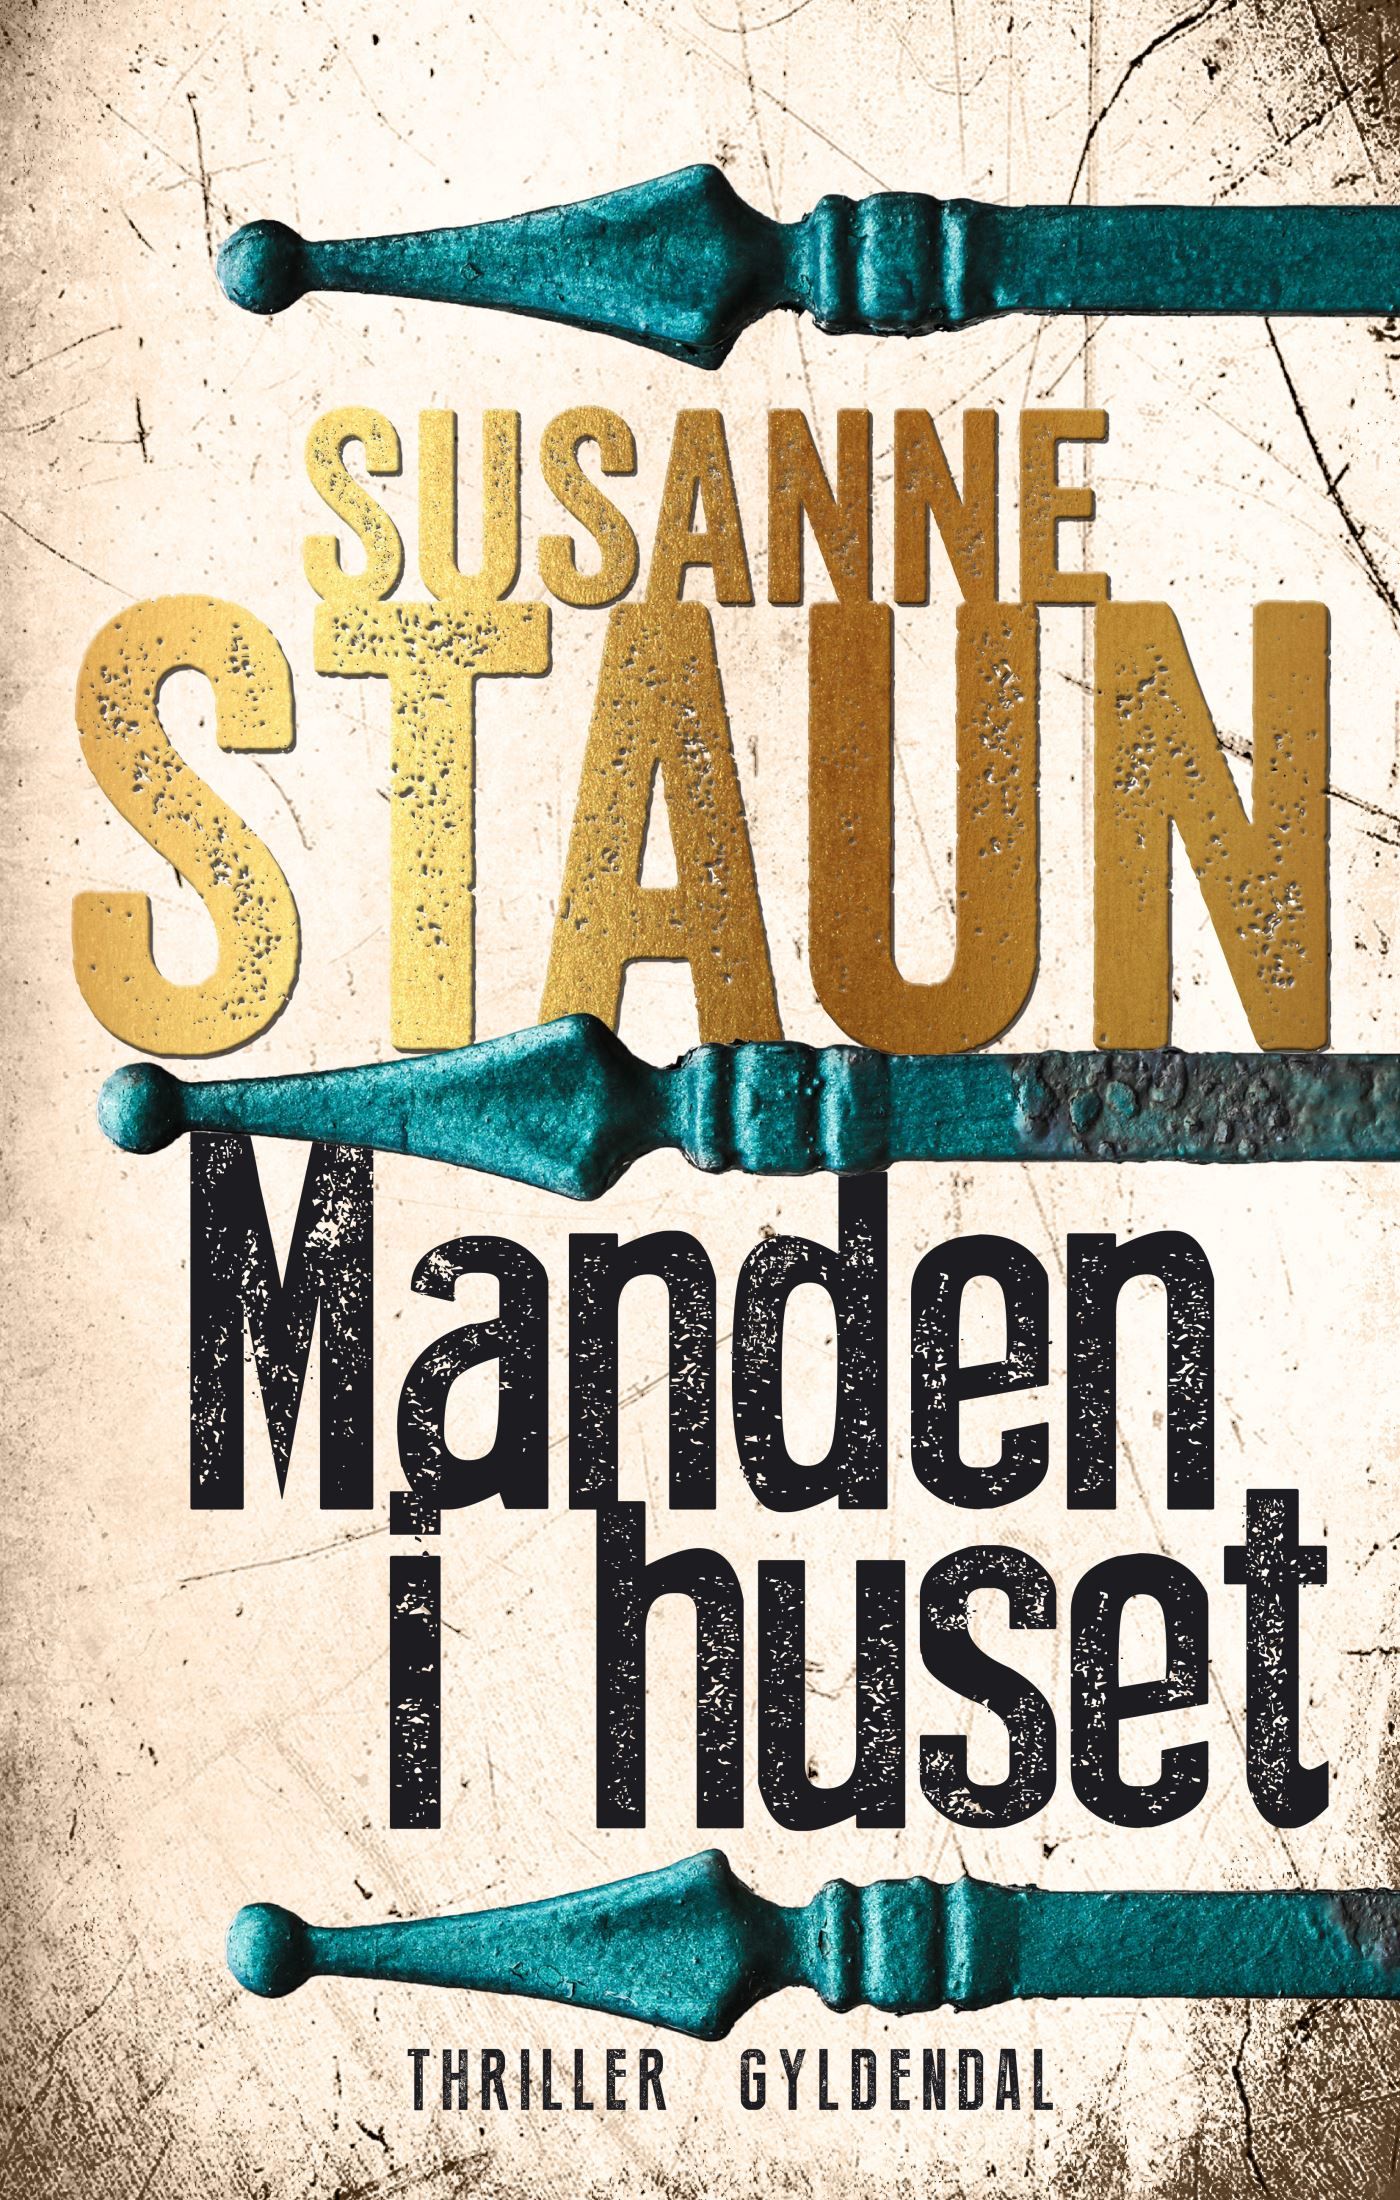 Manden i huset, e-bok av Susanne Staun